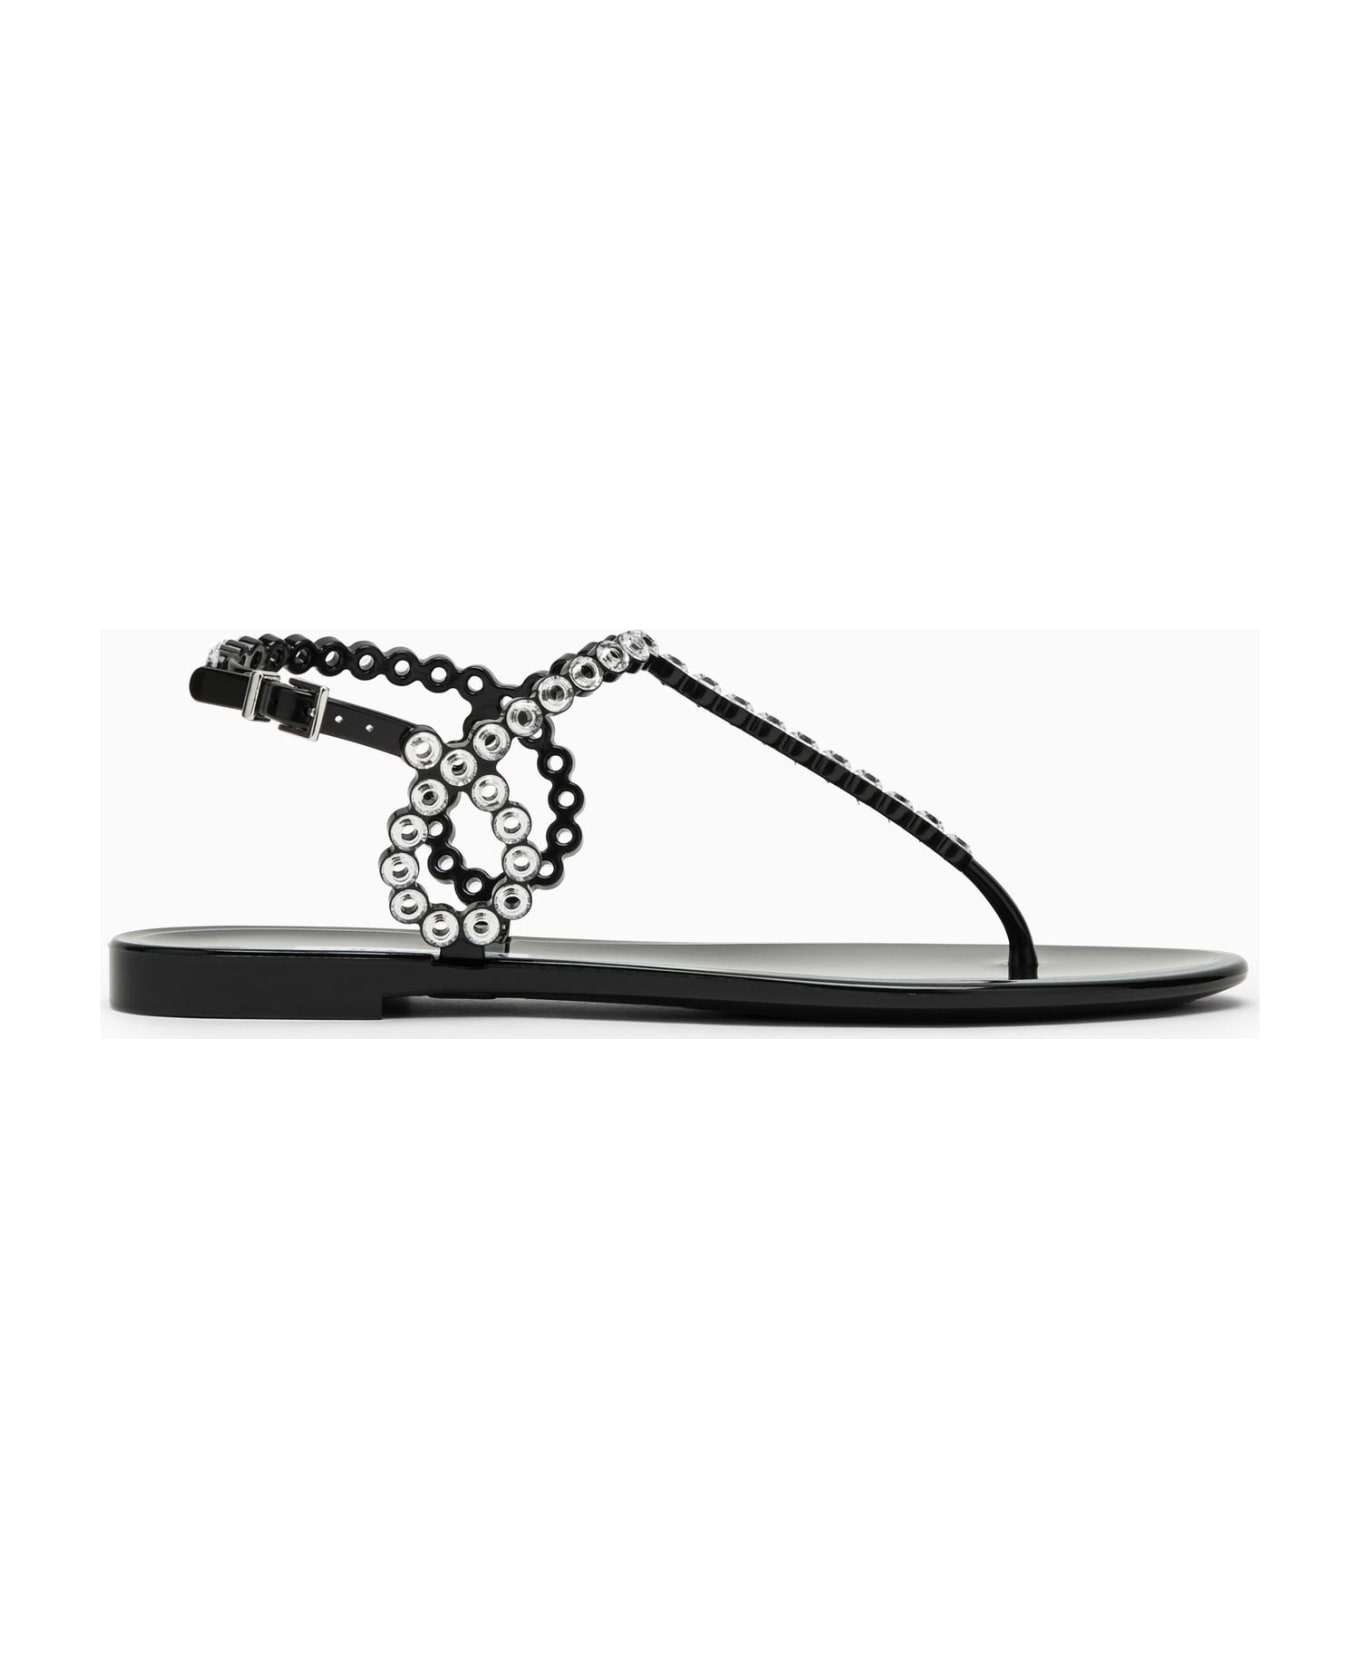 Aquazzura Almost Bare Black Sandal With Crystals - Nero サンダル